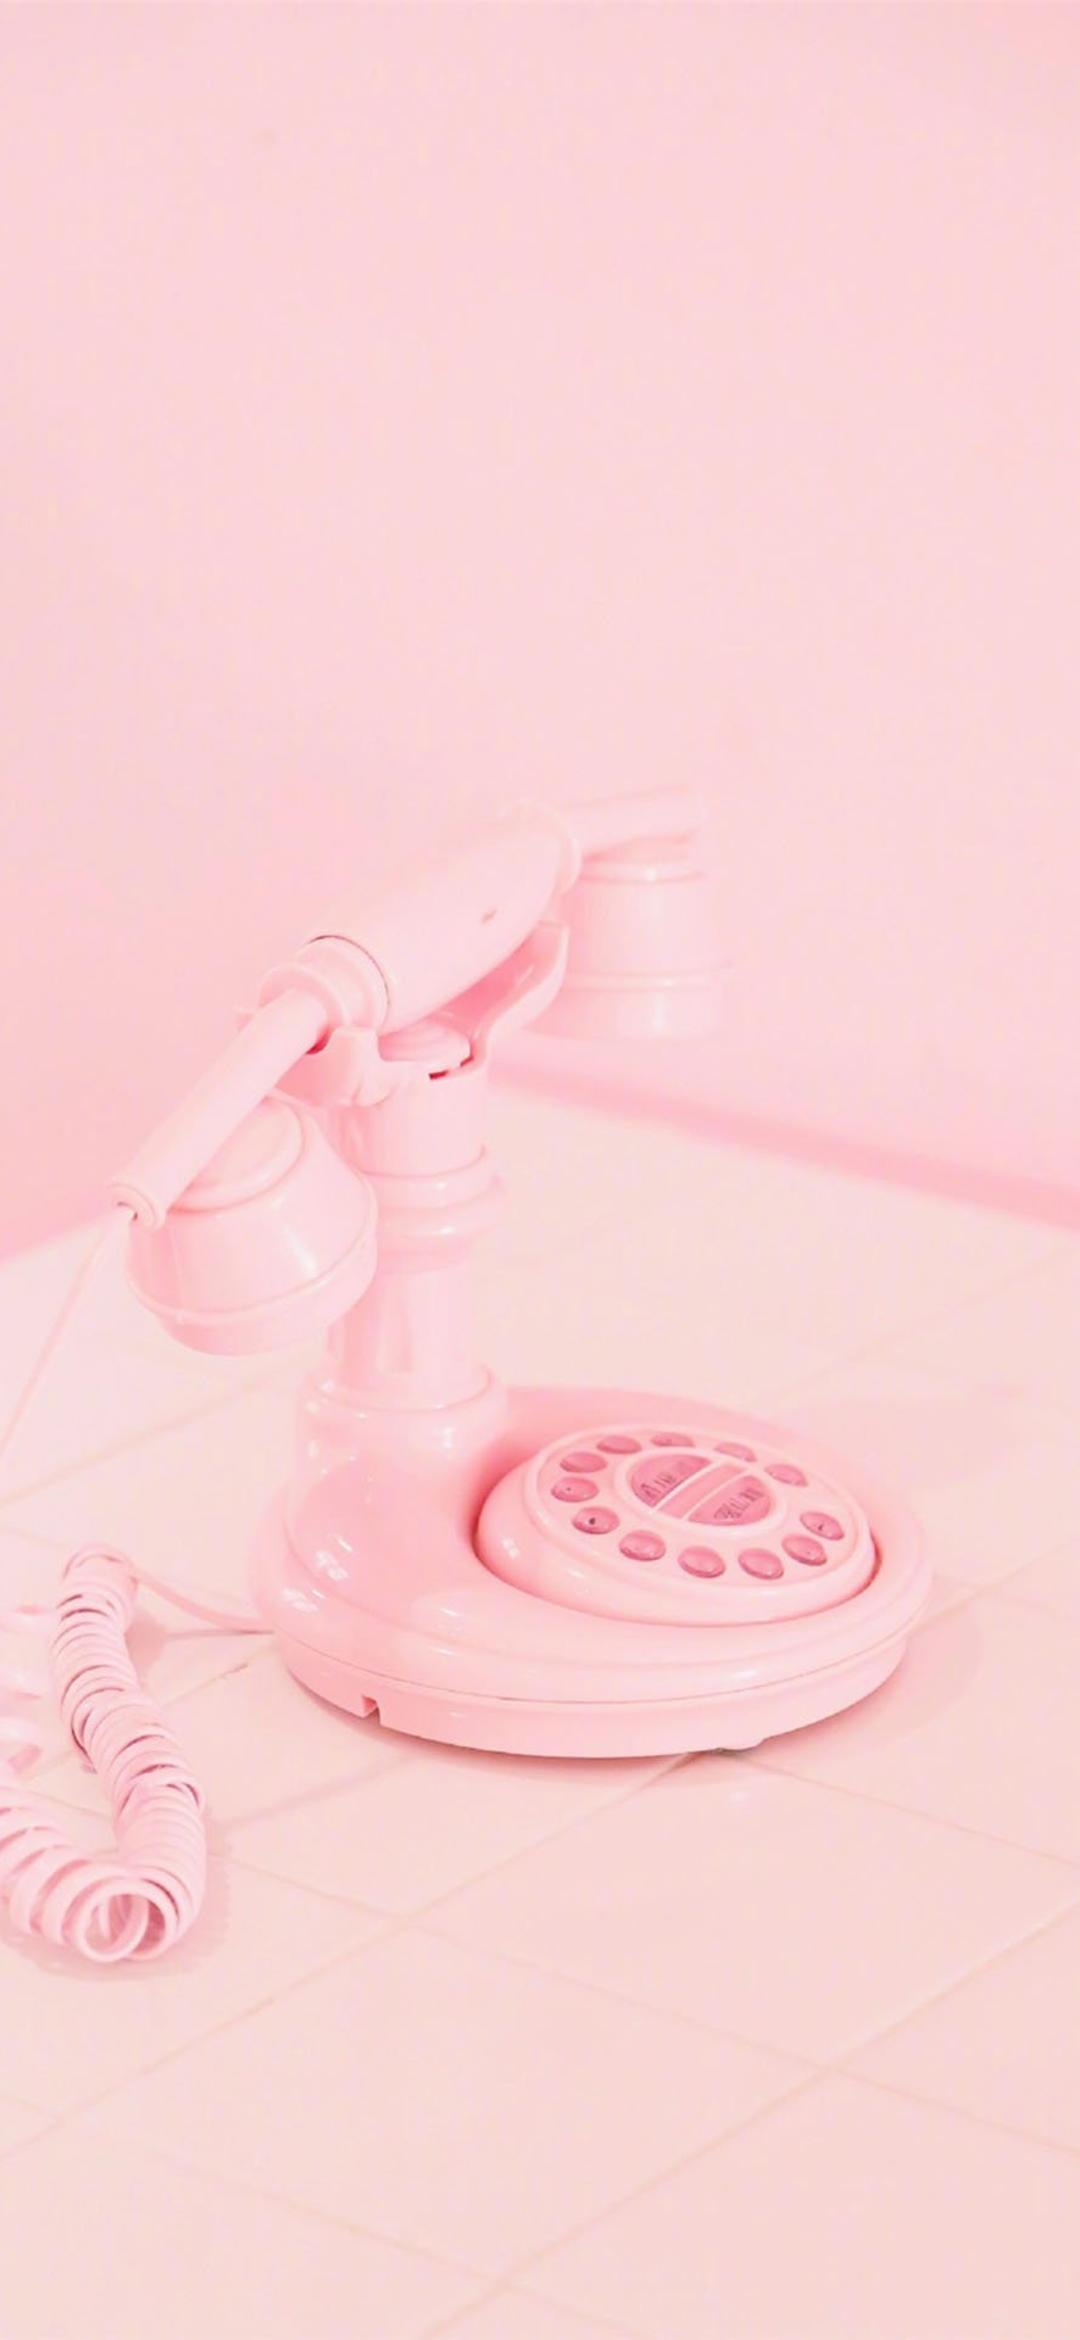 超级可爱的粉色小电话